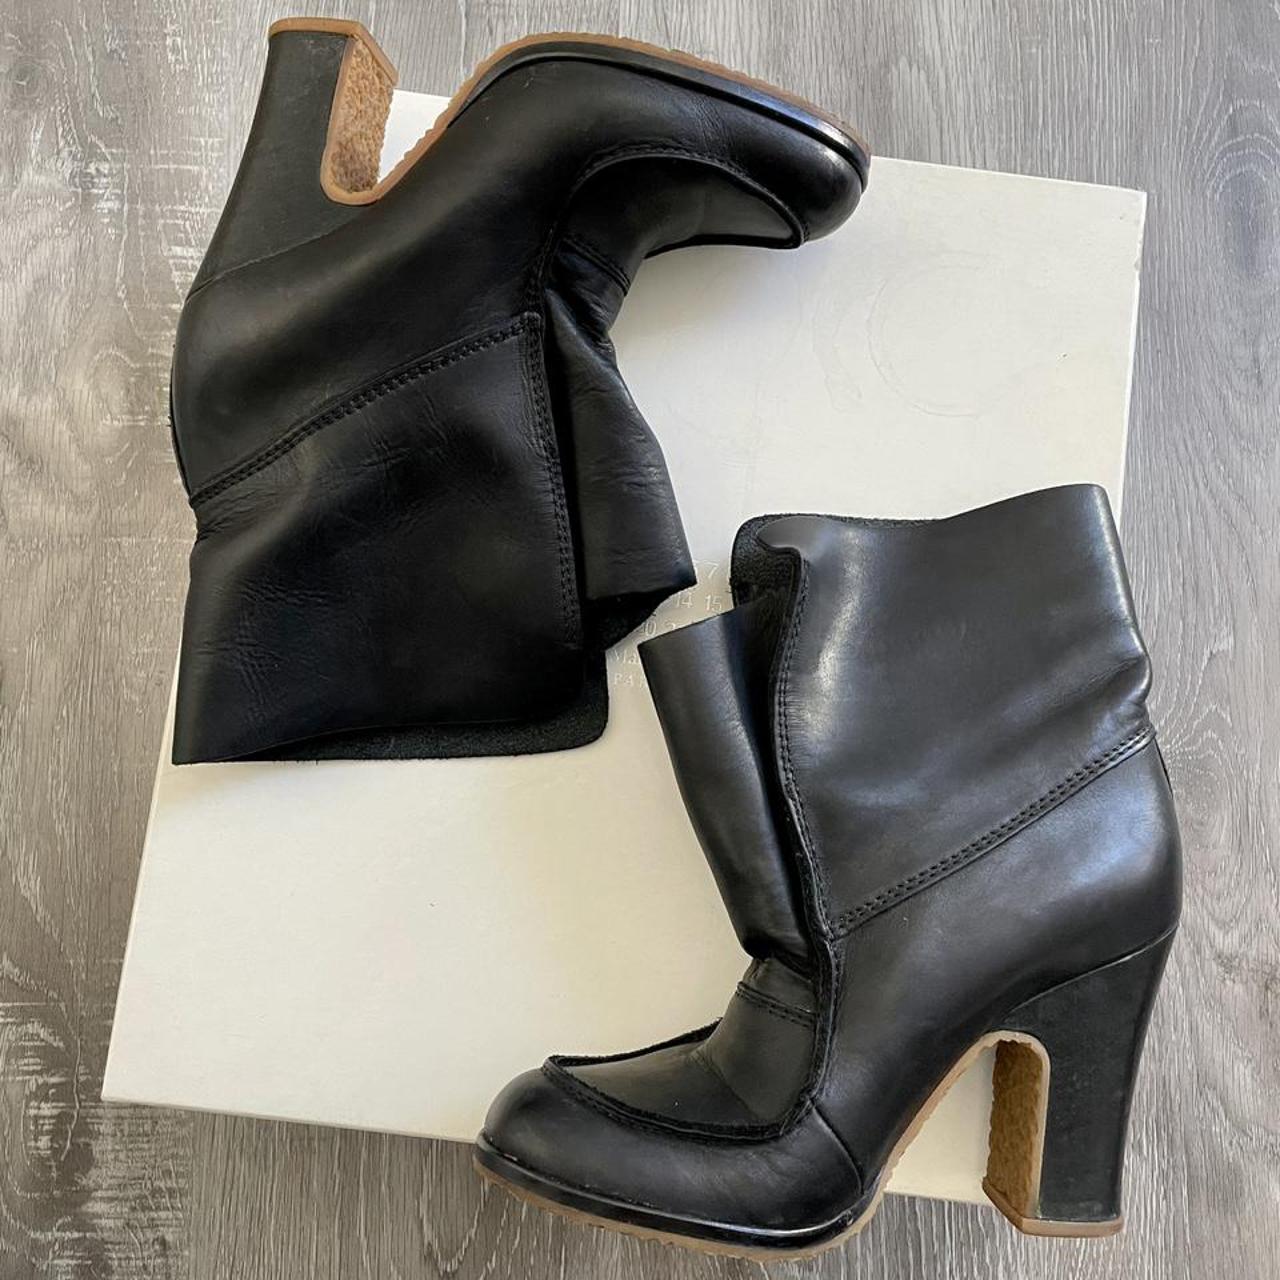 Product Image 1 - Maison Margiela Black Leather Boots

*size